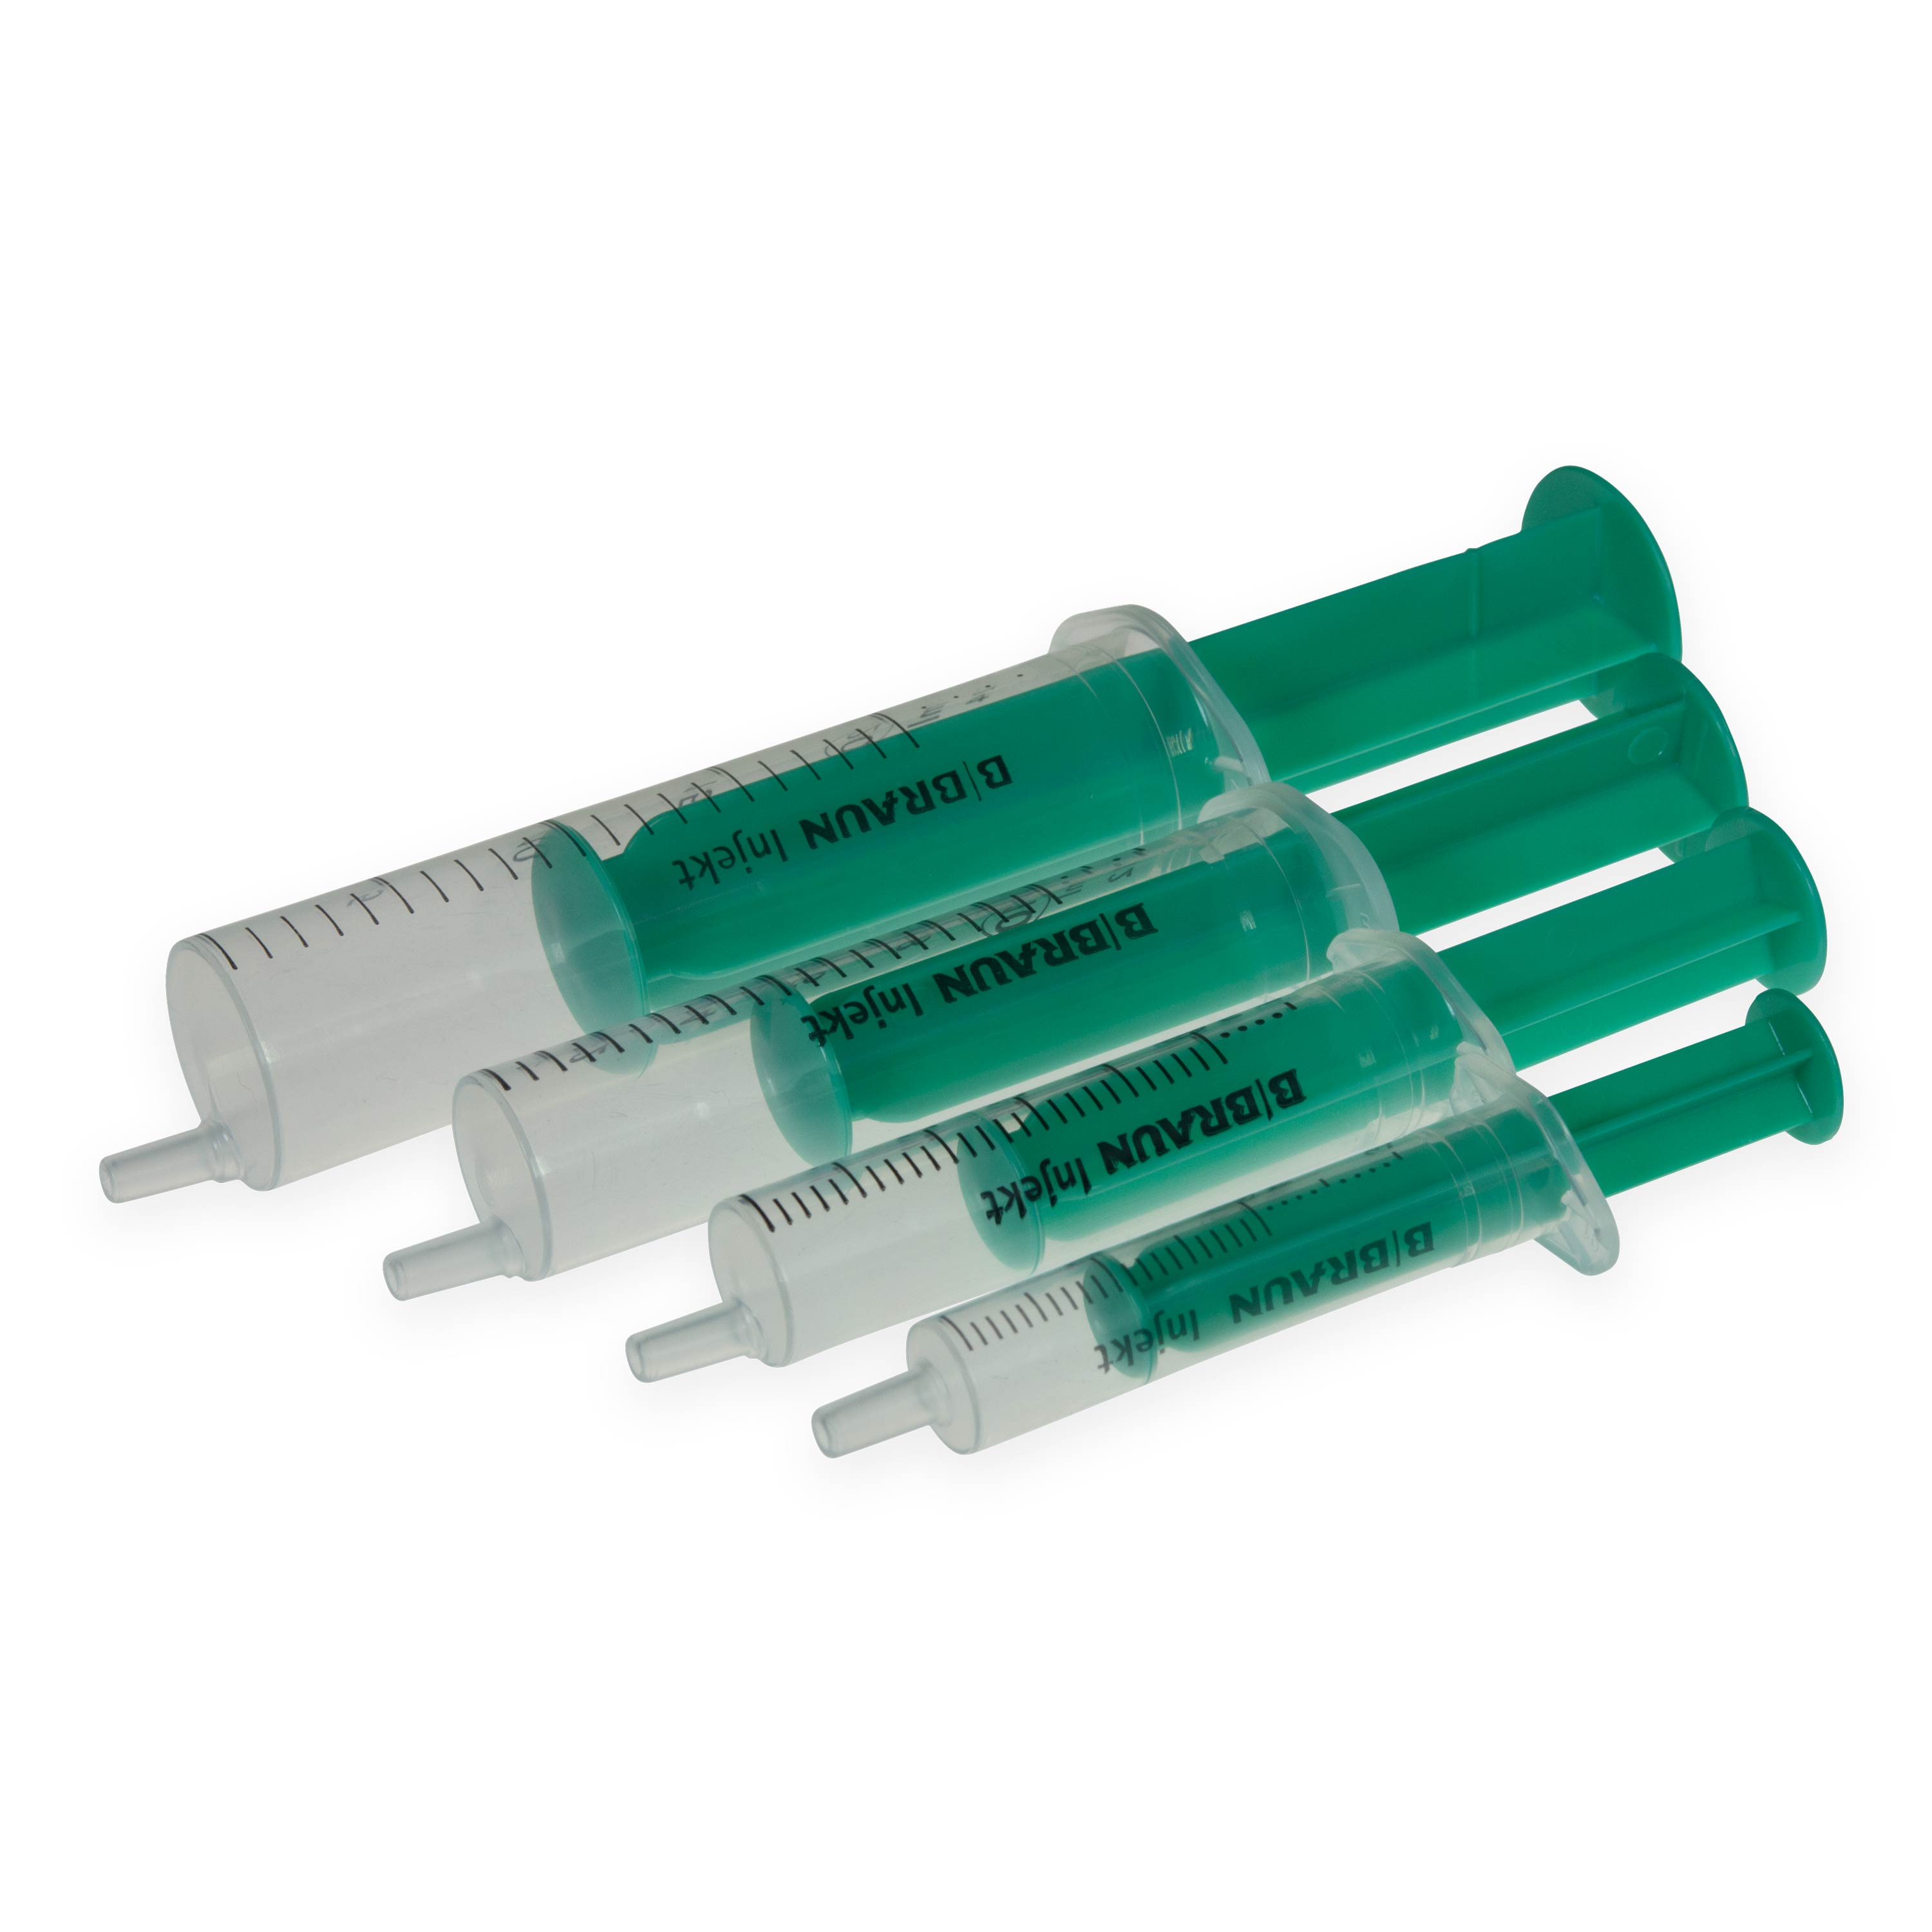 Single-use Syringes